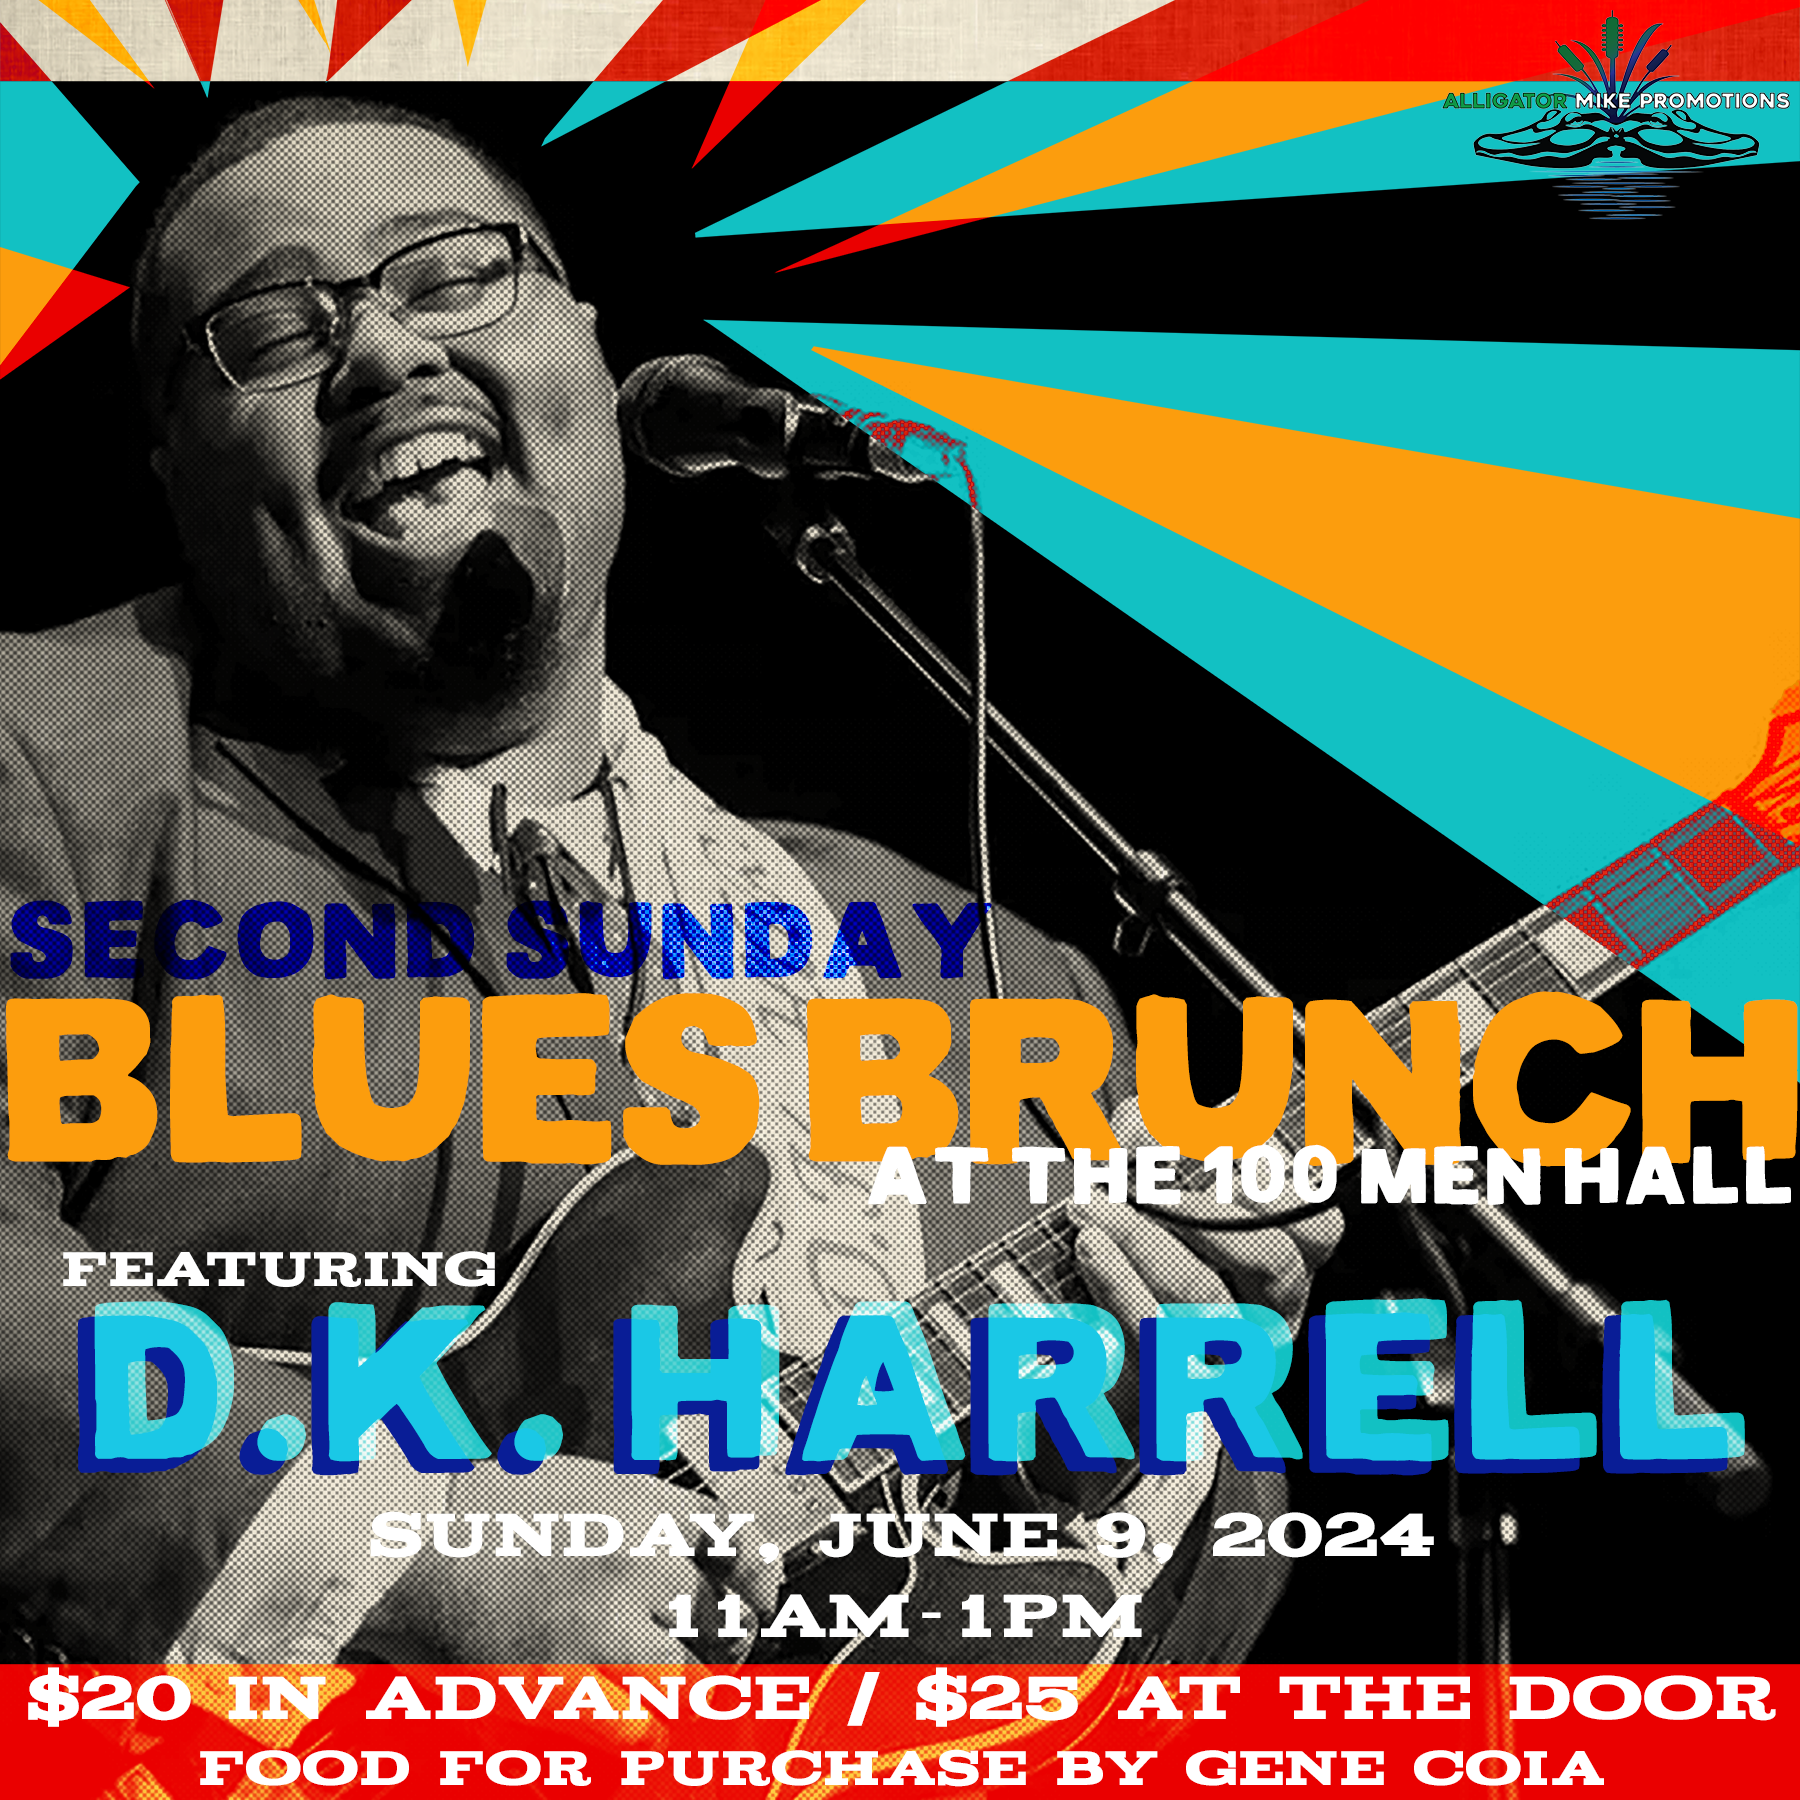 Blues Brunch featuring D.K. Harrell